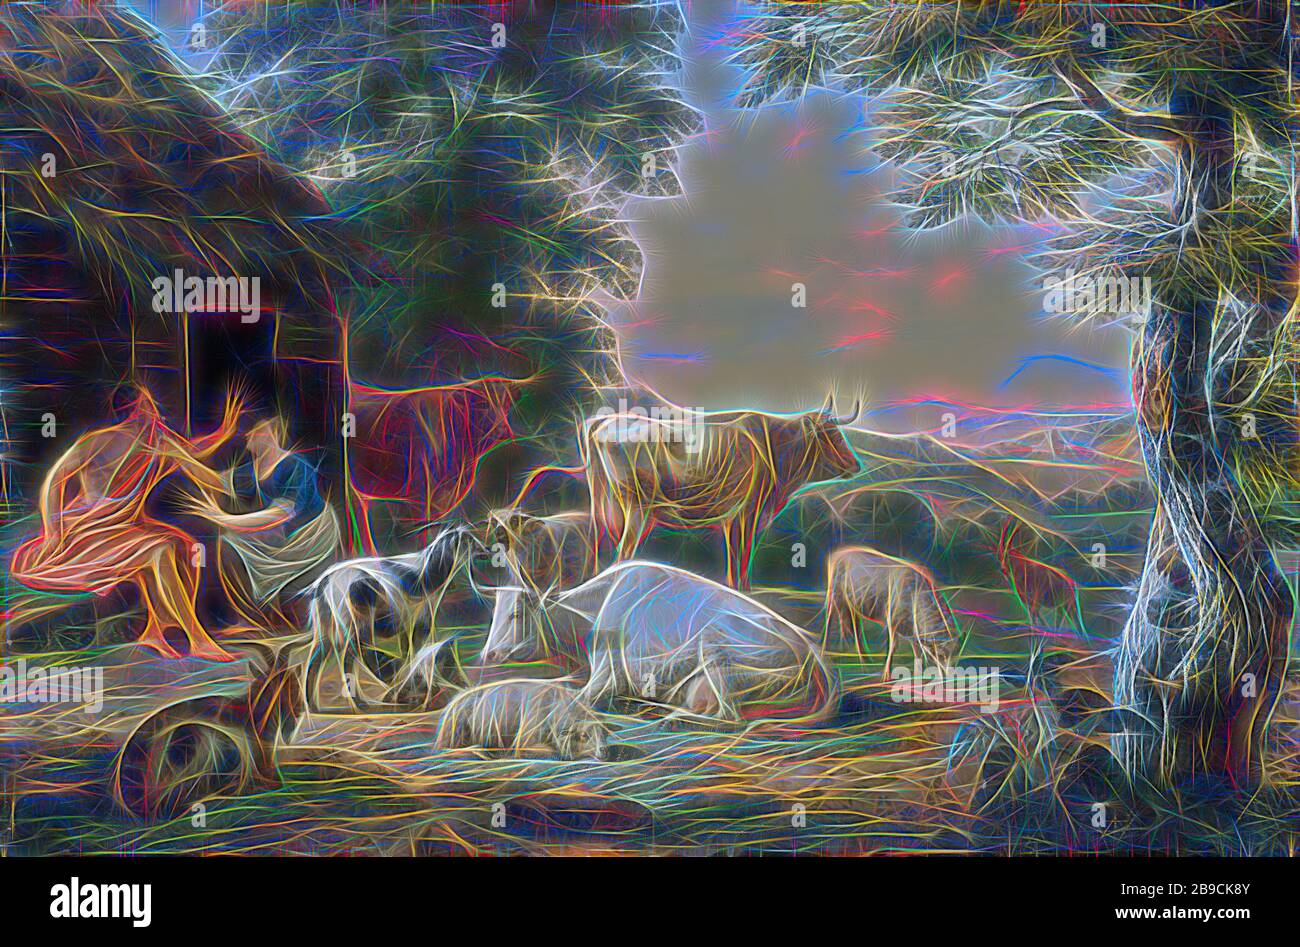 Paysage Arcadien avec les bergers et les bovins, paysage Arcadien avec les bergers et le bétail. Dans une ferme, une femme pétrir tient une fleur devant un berger assis. Sur les vaches, les moutons et les chèvres de droite. Sur la droite un paysage vallonné., Jan van Gool, 1710 - 1763, panneau, peinture à l'huile (peinture), h 42,5 cm × W 63 cm d 10 cm, repensé par Gibon, design de gaie chaleureuse de luminosité et de rayons de lumière radiance. L'art classique réinventé avec une touche moderne. La photographie inspirée du futurisme, qui embrasse l'énergie dynamique de la technologie moderne, du mouvement, de la vitesse et révolutionne la culture. Banque D'Images